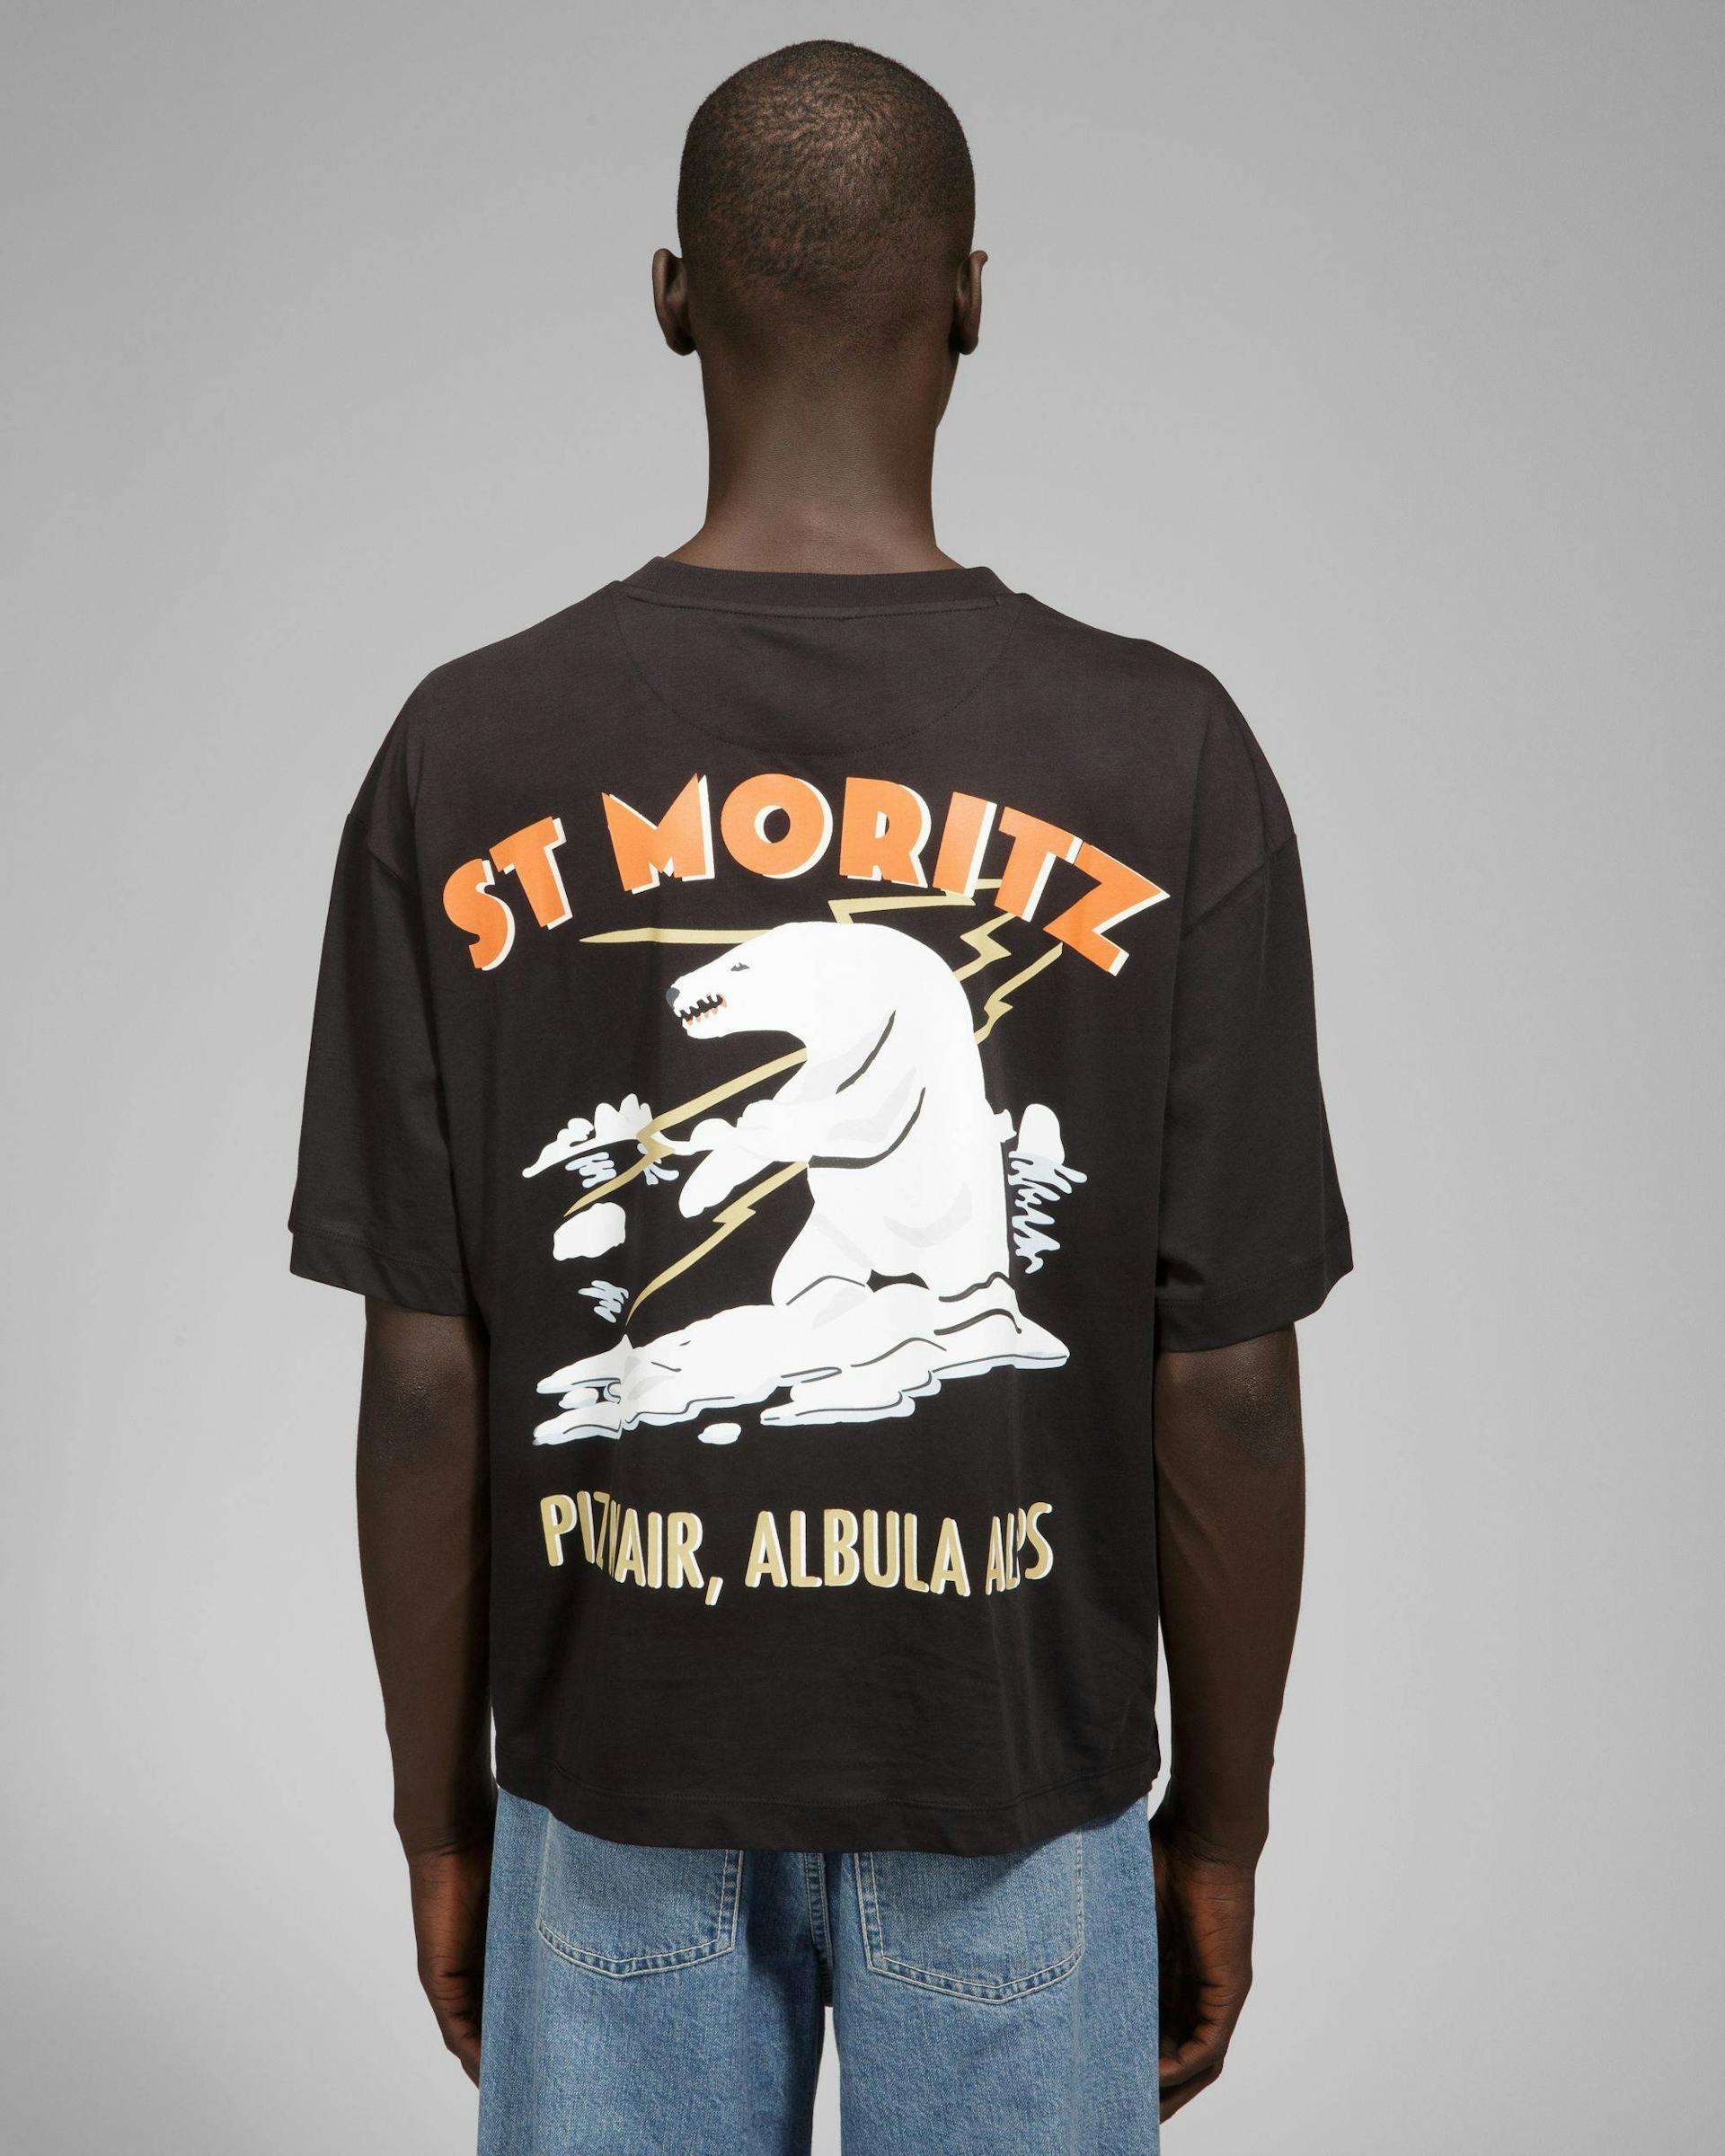 St Moritz T-Shirt - Men's - Bally - 08